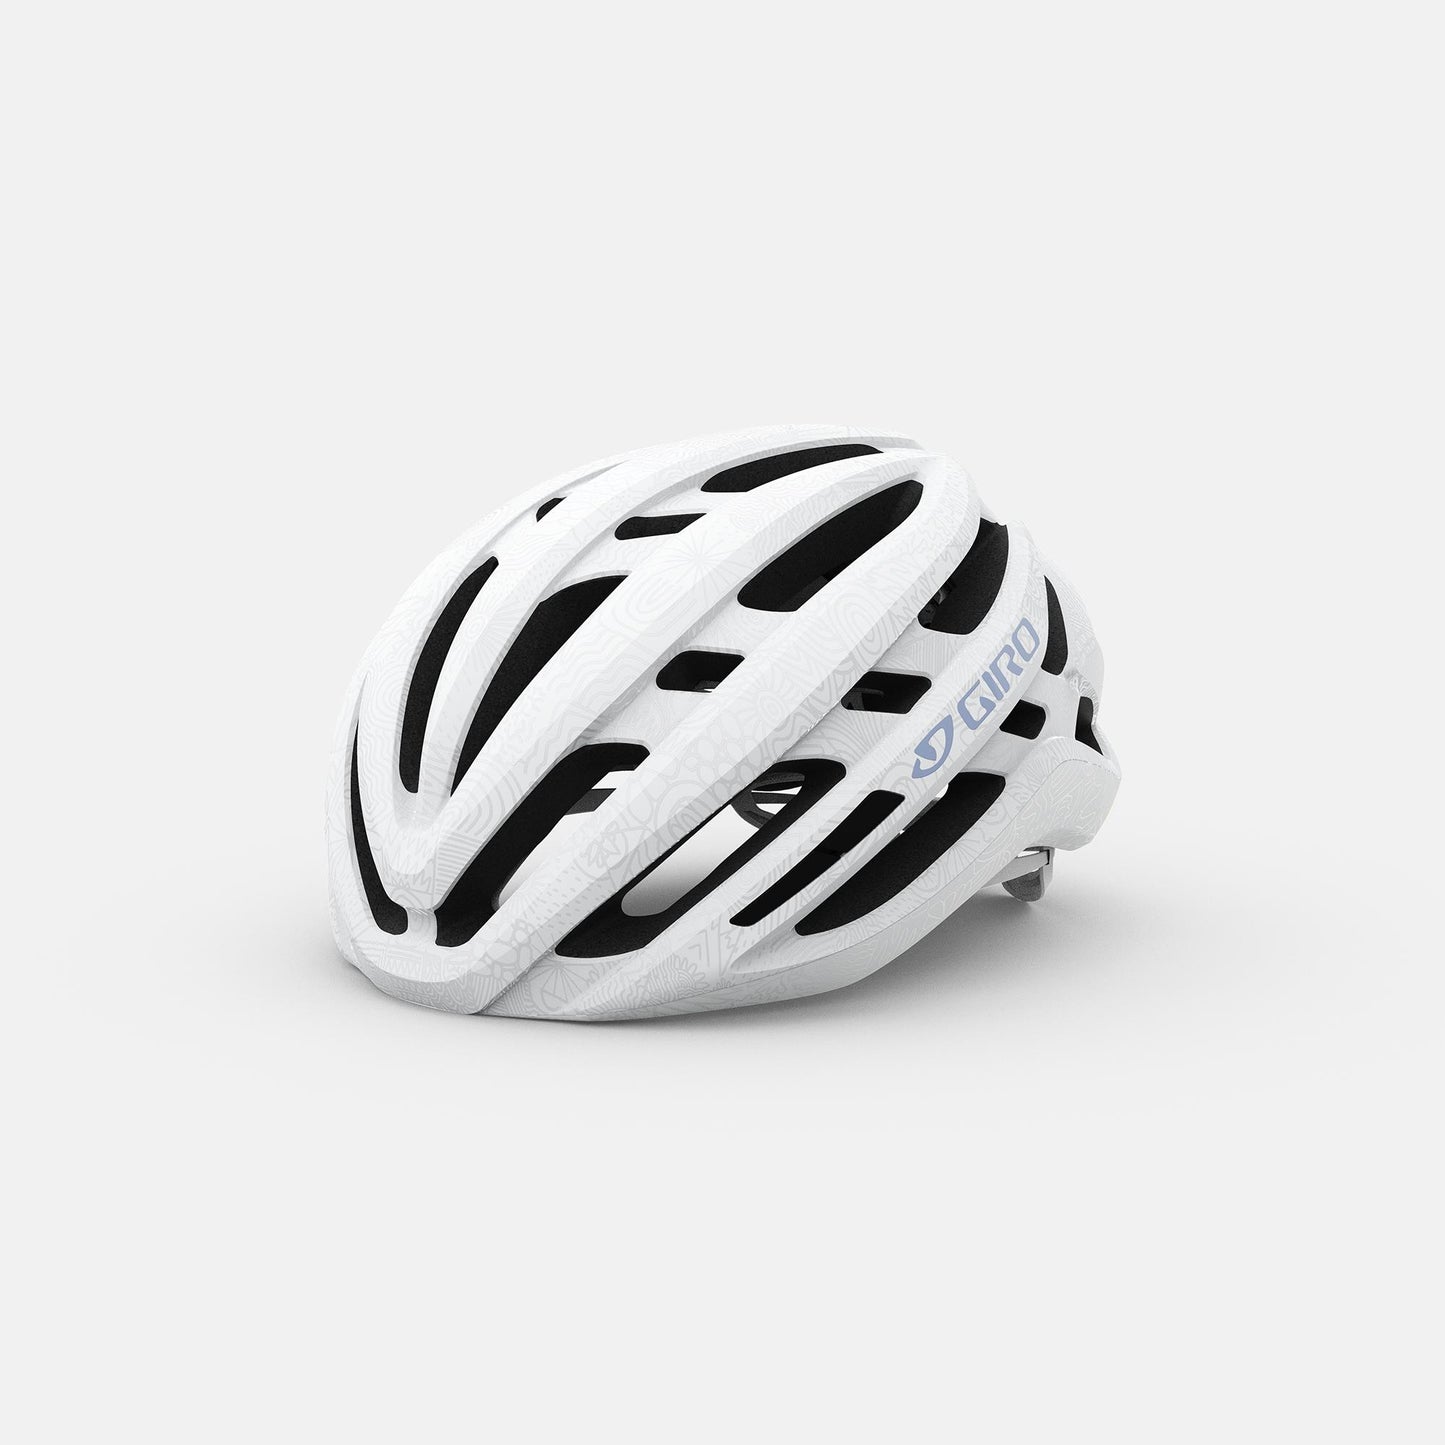 Giro Agilis MIPS Women's Road Helmet